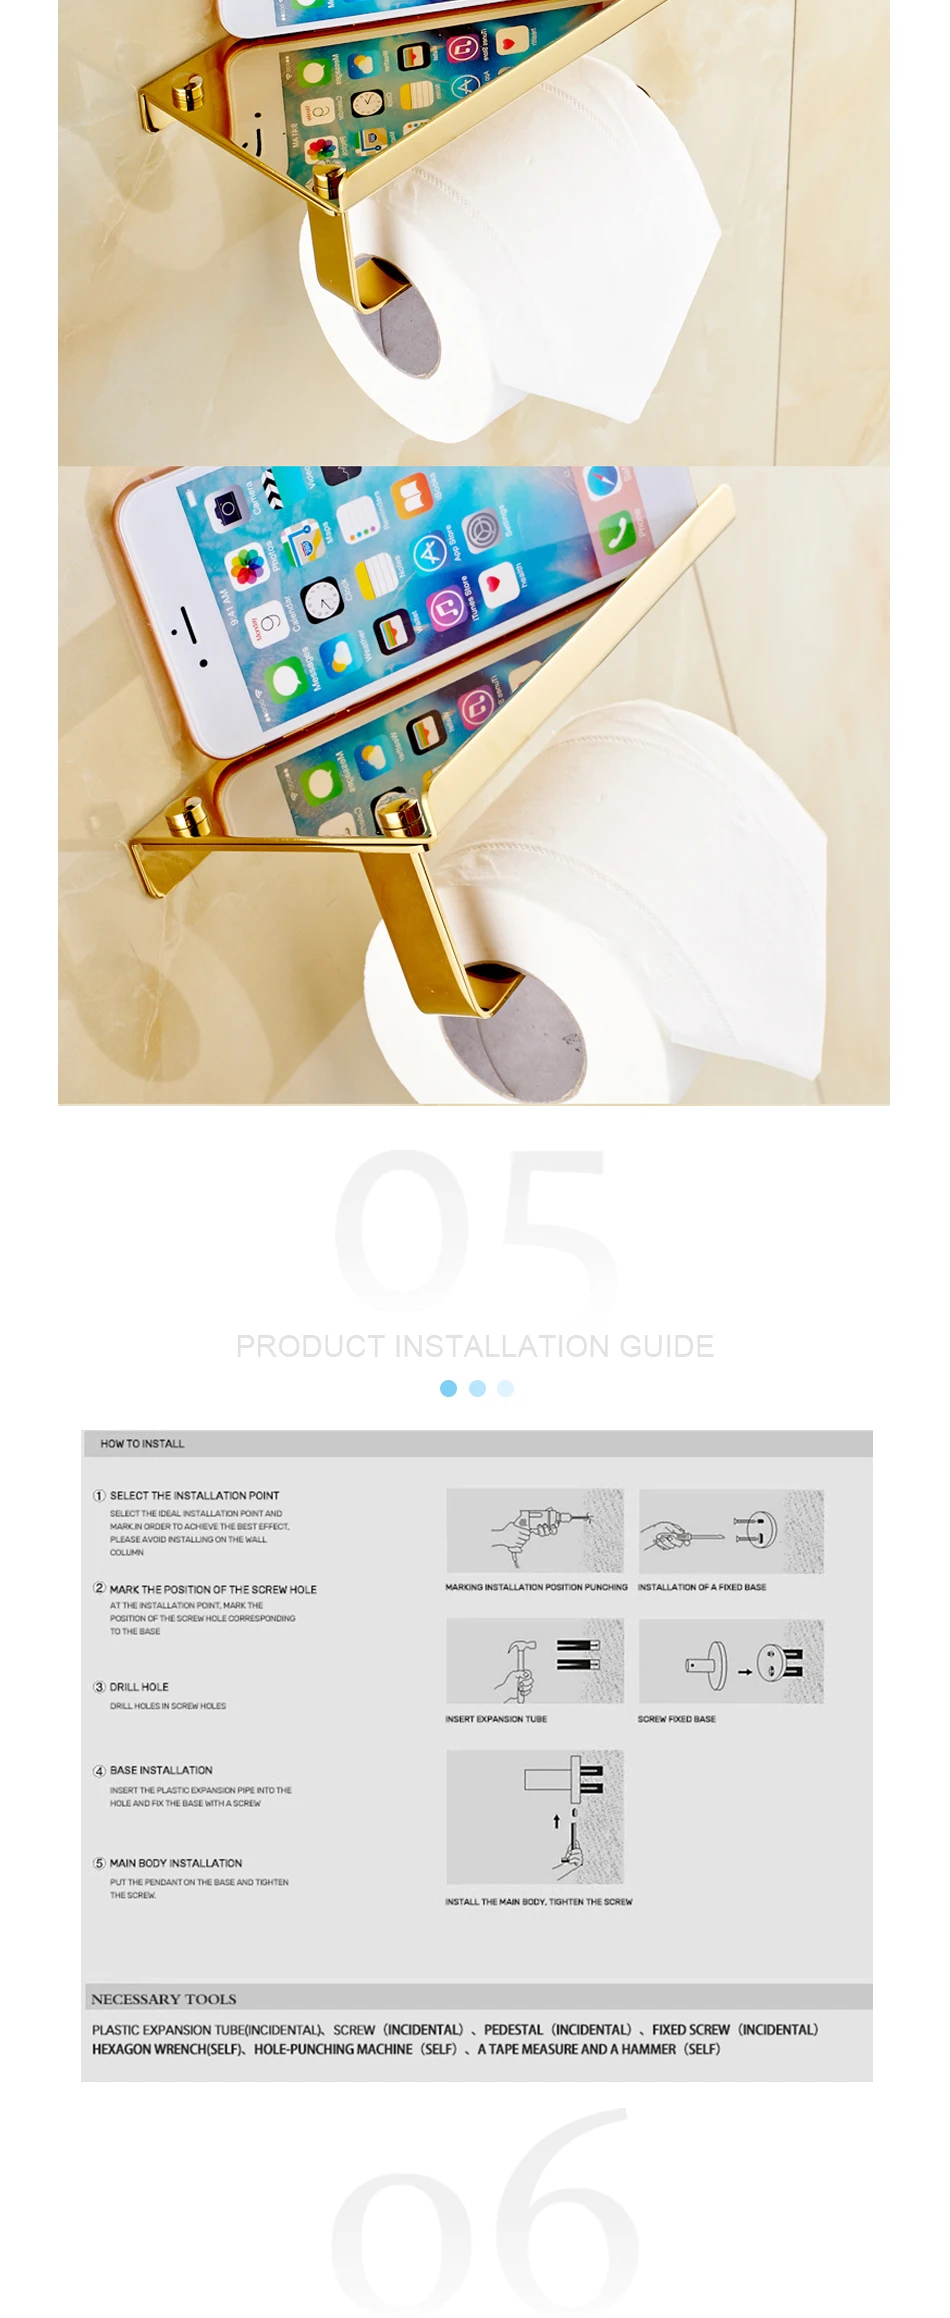 Золотой держатель для туалетной бумаги из нержавеющей стали, стойкая стойка для туалетной бумаги с держателем для телефона, полировка, аксессуары для ванной комнаты, набор